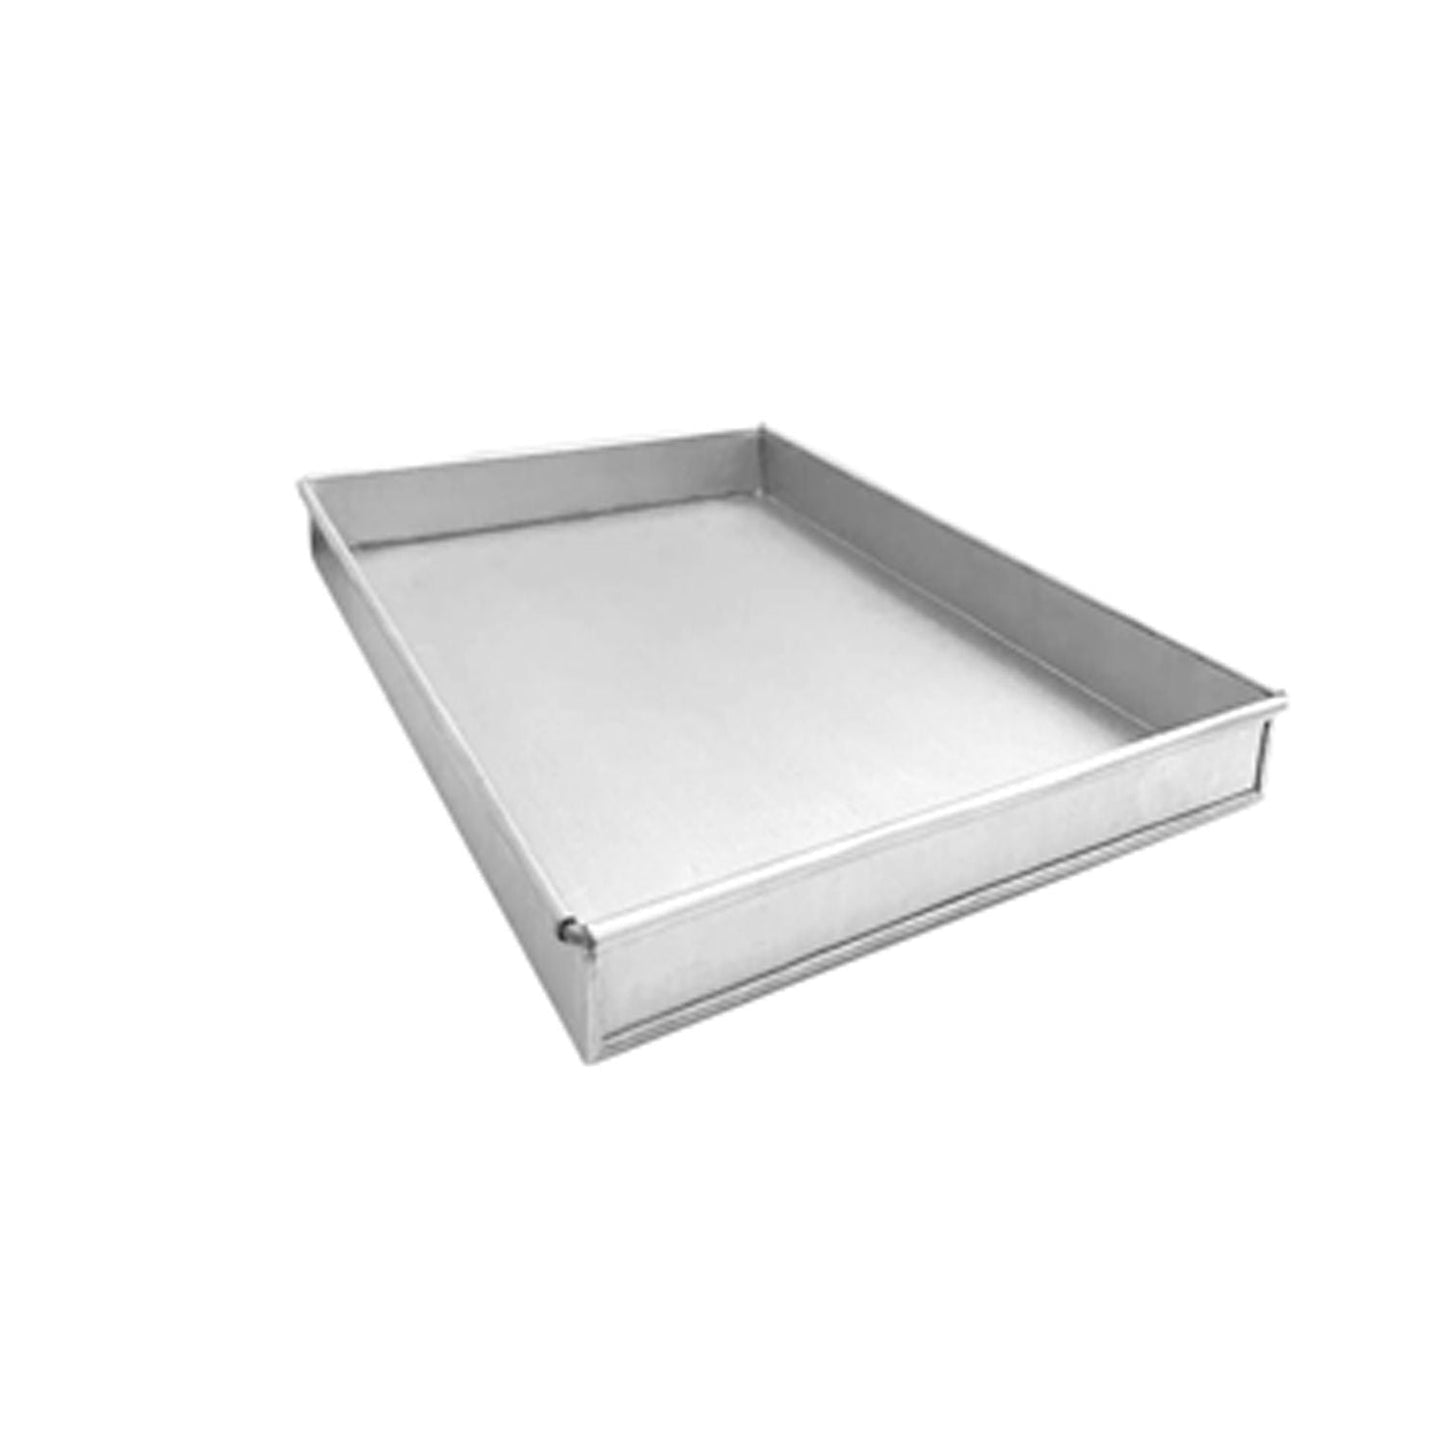 Aluminised Baking Tray - 750 x 450 x 25 mm - Large